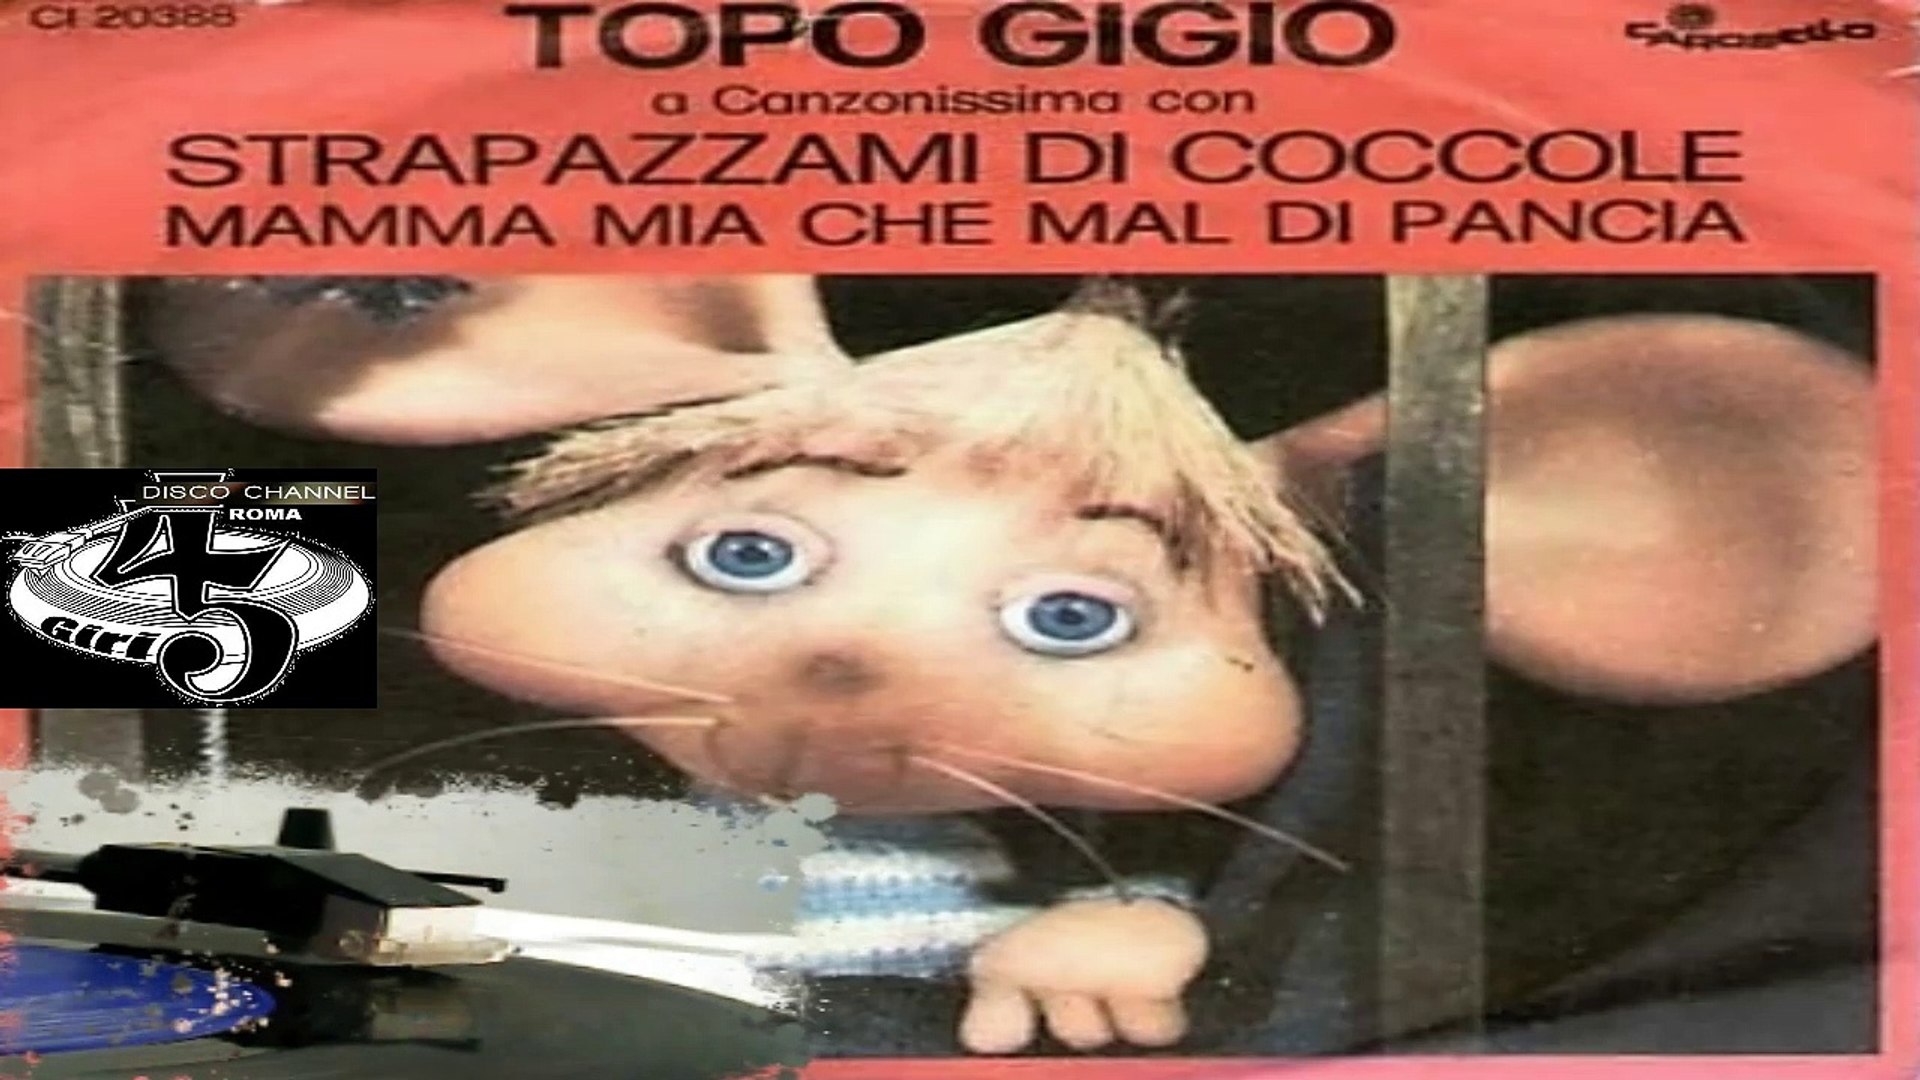 Strapazzami Di Coccole/Mamma Mia Che Mal Di Pancia - Topo Gigio 1974 -  Video Dailymotion